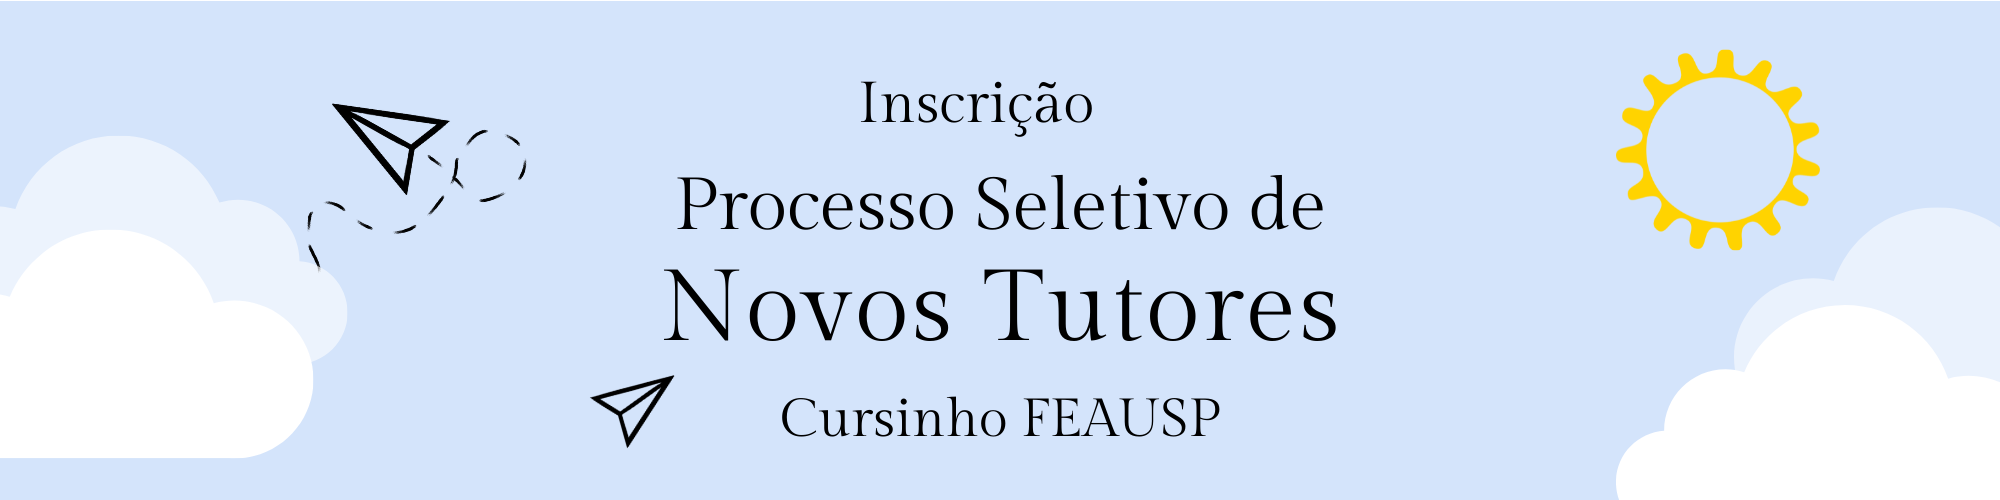 Cursinho FEAUSP está com Processo Seletivo para tutores aberto